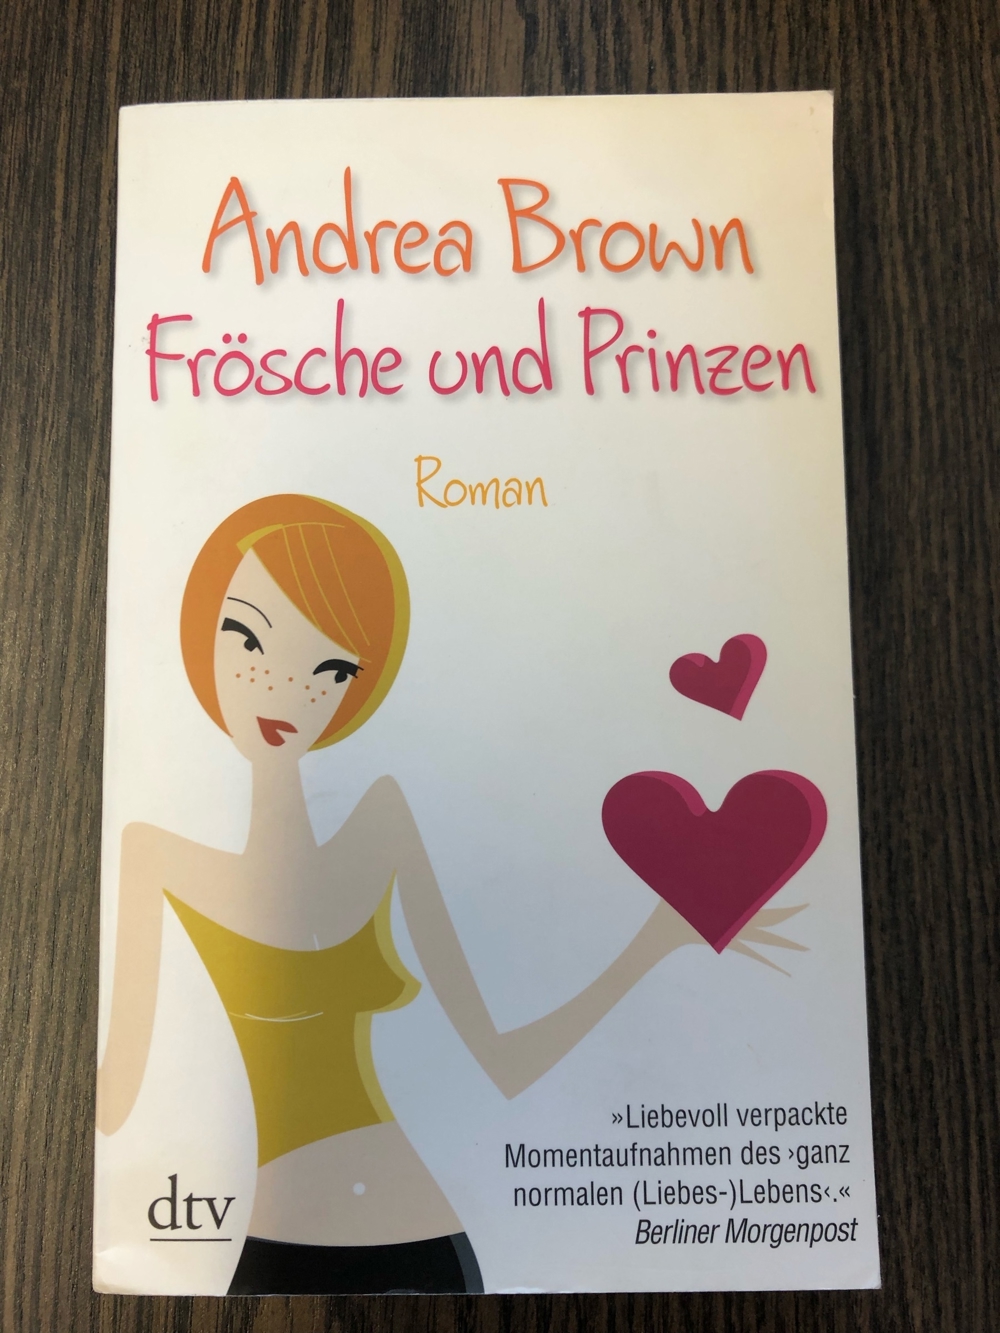 Roman Frösche und Prinzen, Andrea Brown